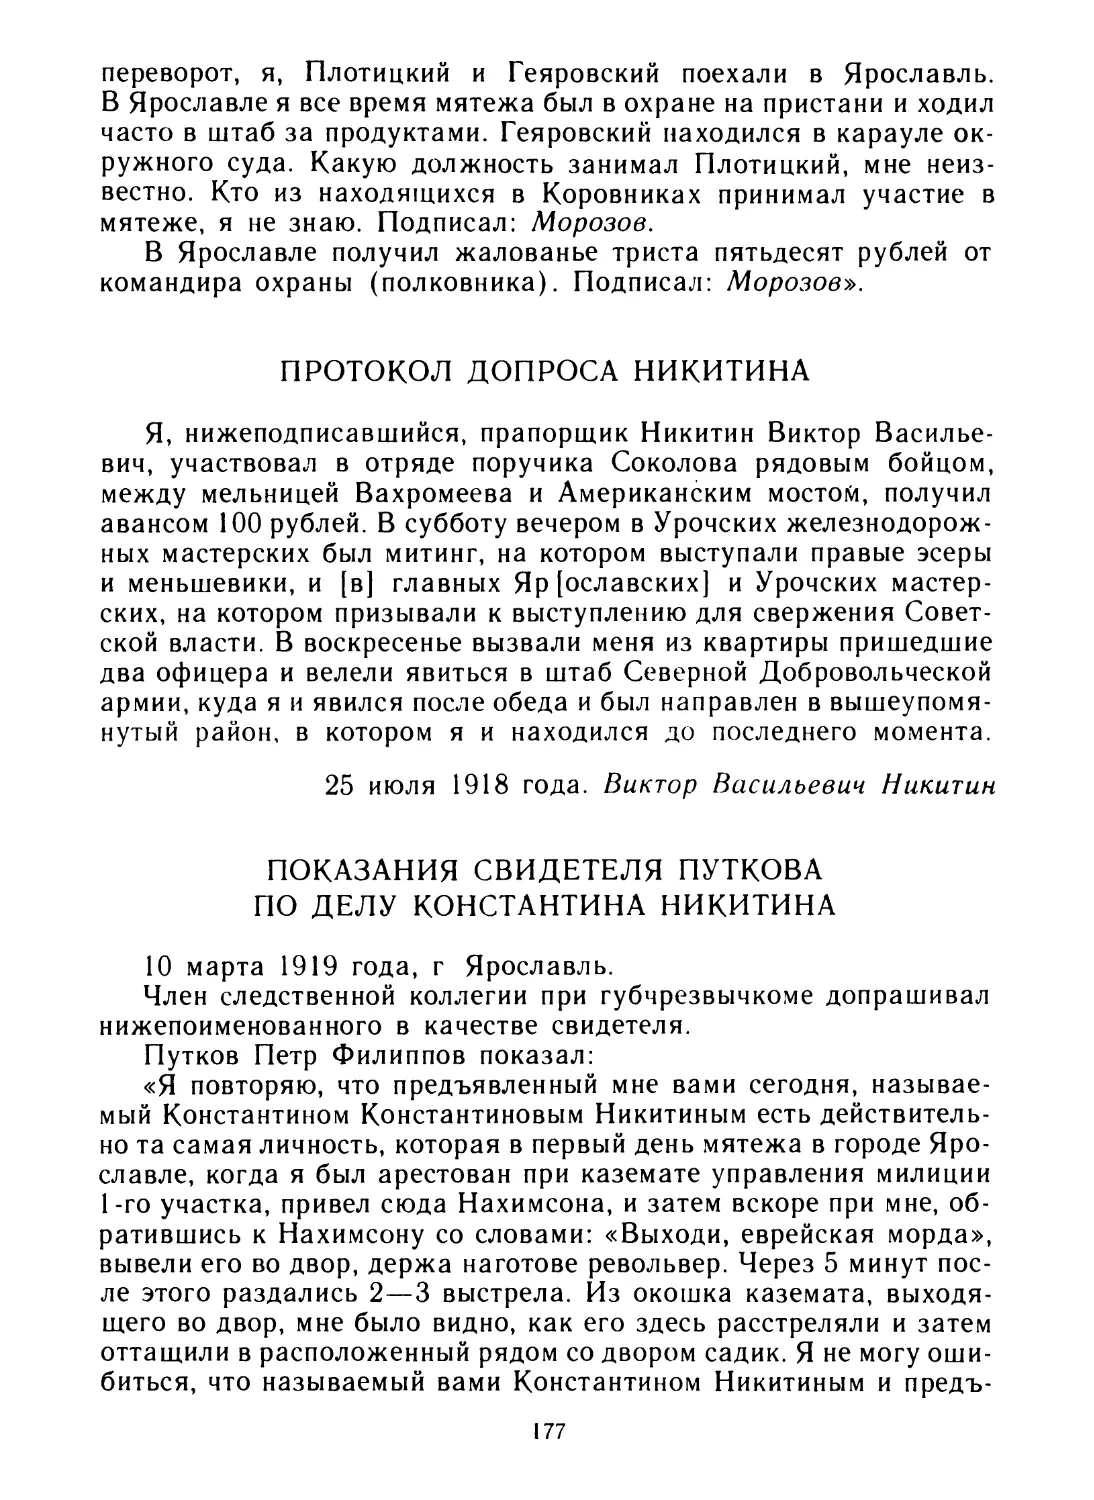 Протокол допроса Никитина
Показания свидетеля Путкова по делу Константина Никитина